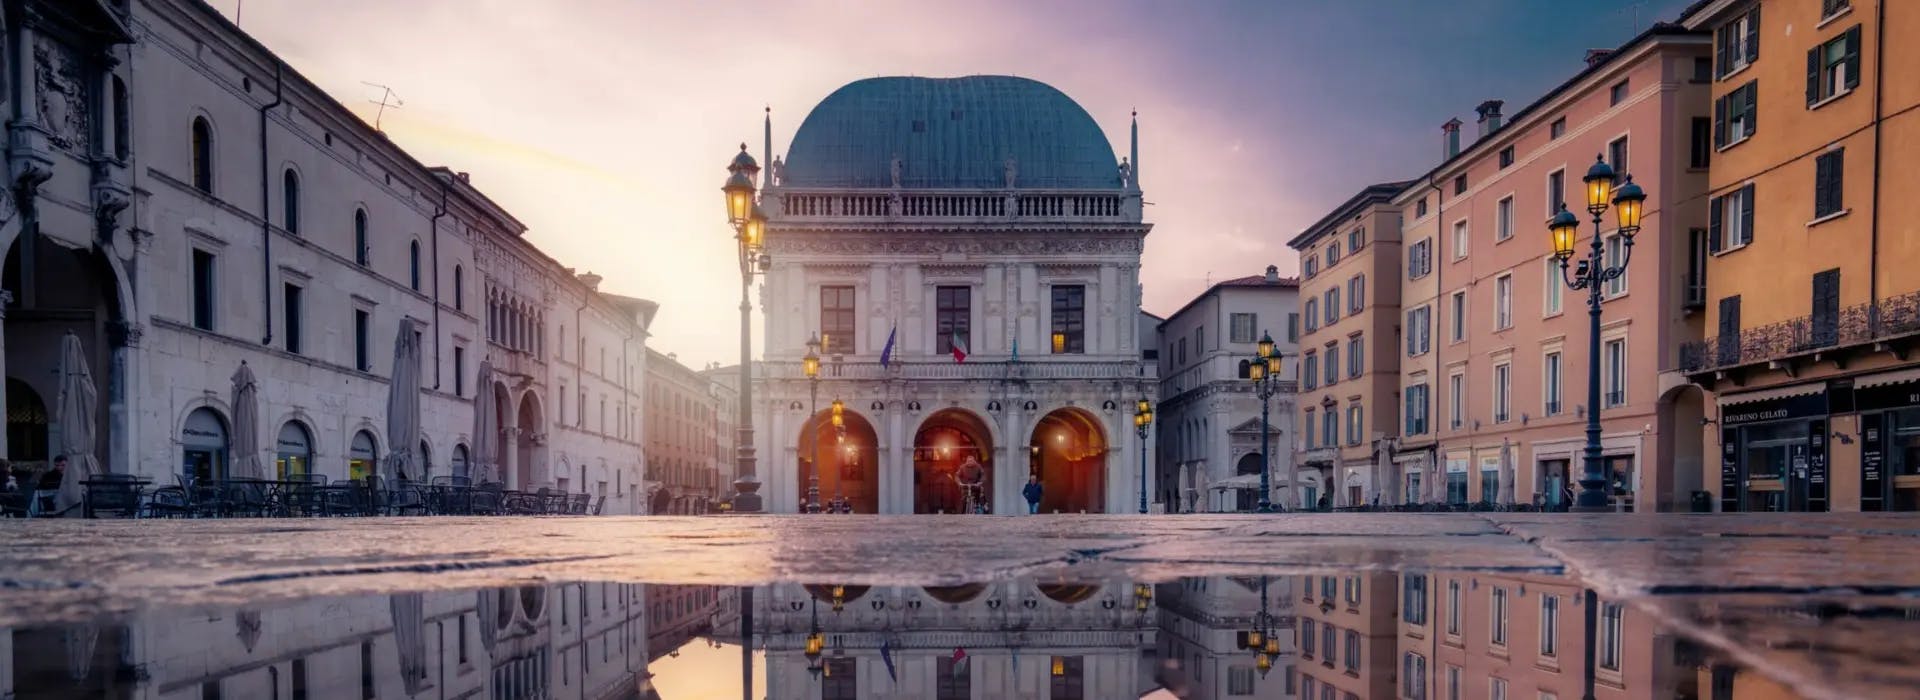 Una vista panoramica del centro storico di Brescia